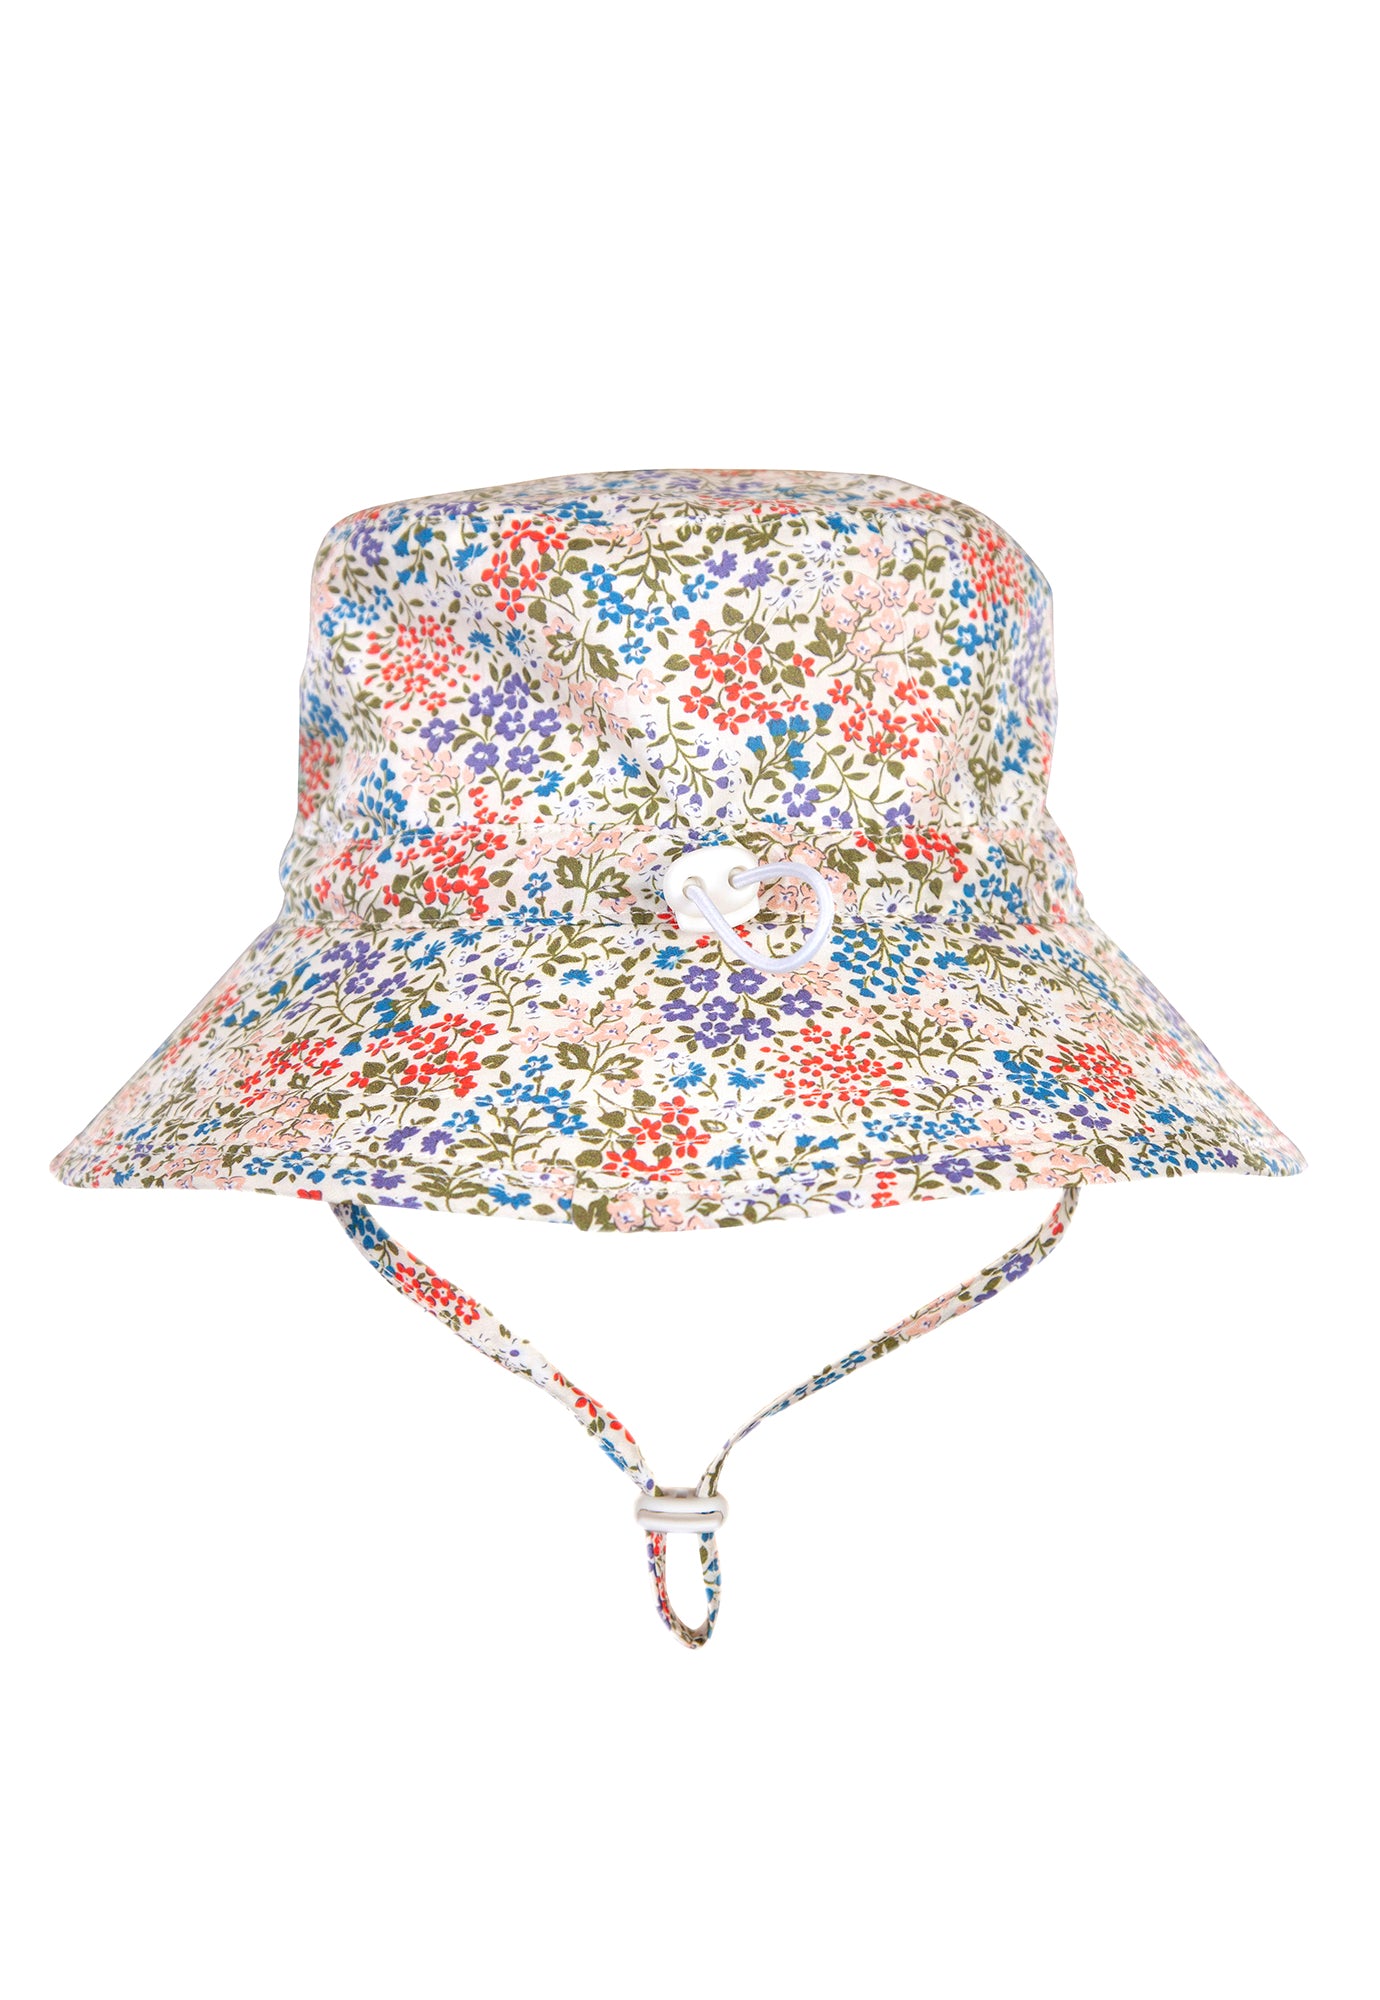 acorn kids - maribel bucket hat - cream floral